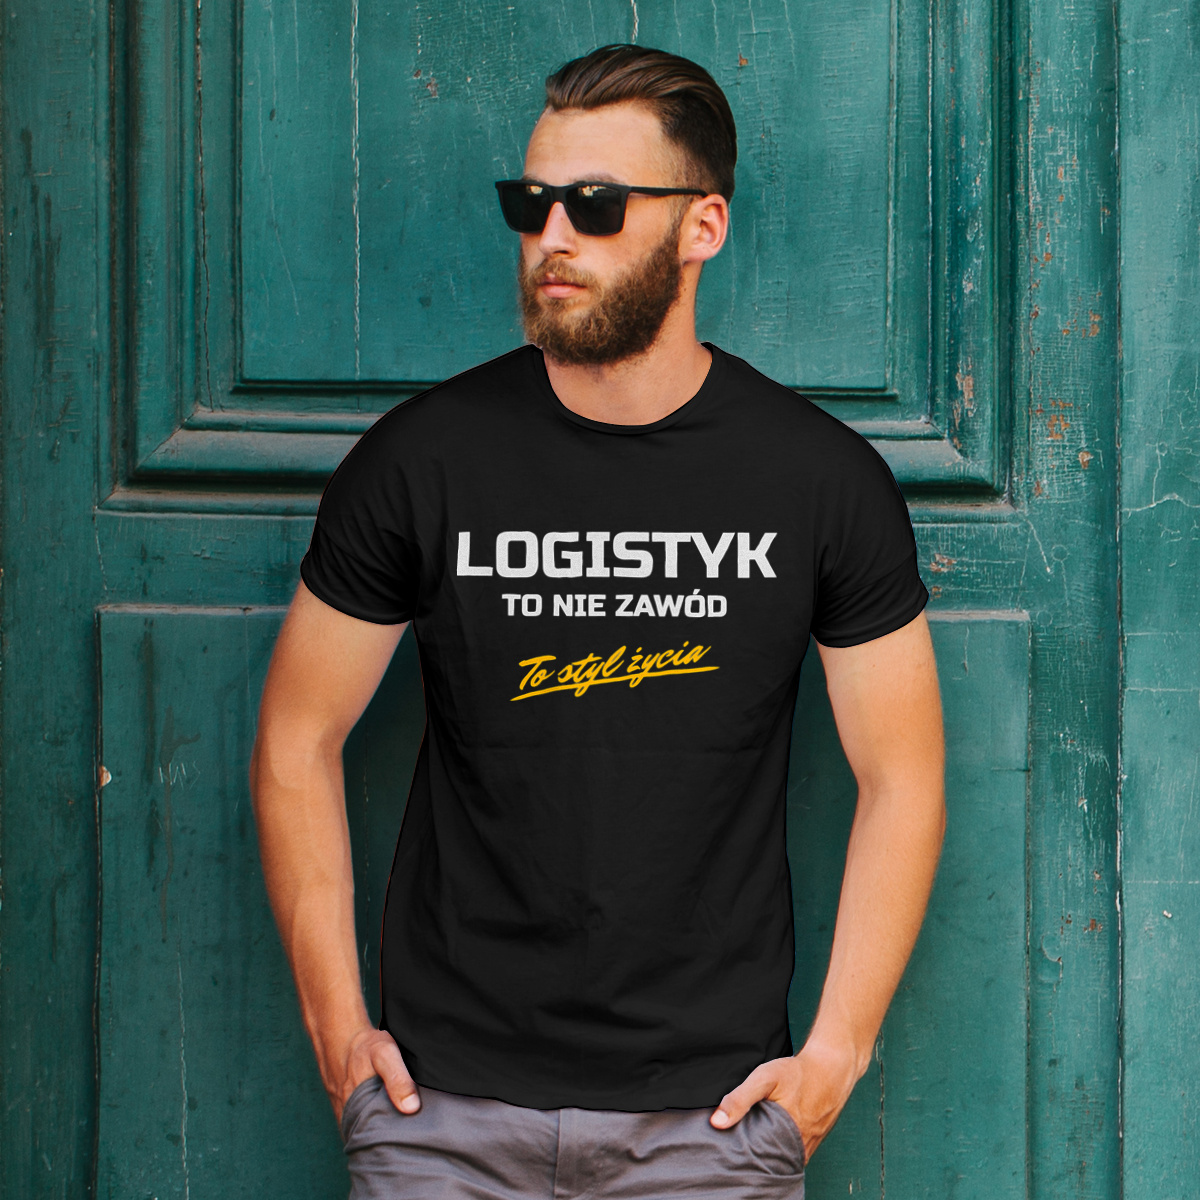 Logistyk To Nie Zawód - To Styl Życia - Męska Koszulka Czarna